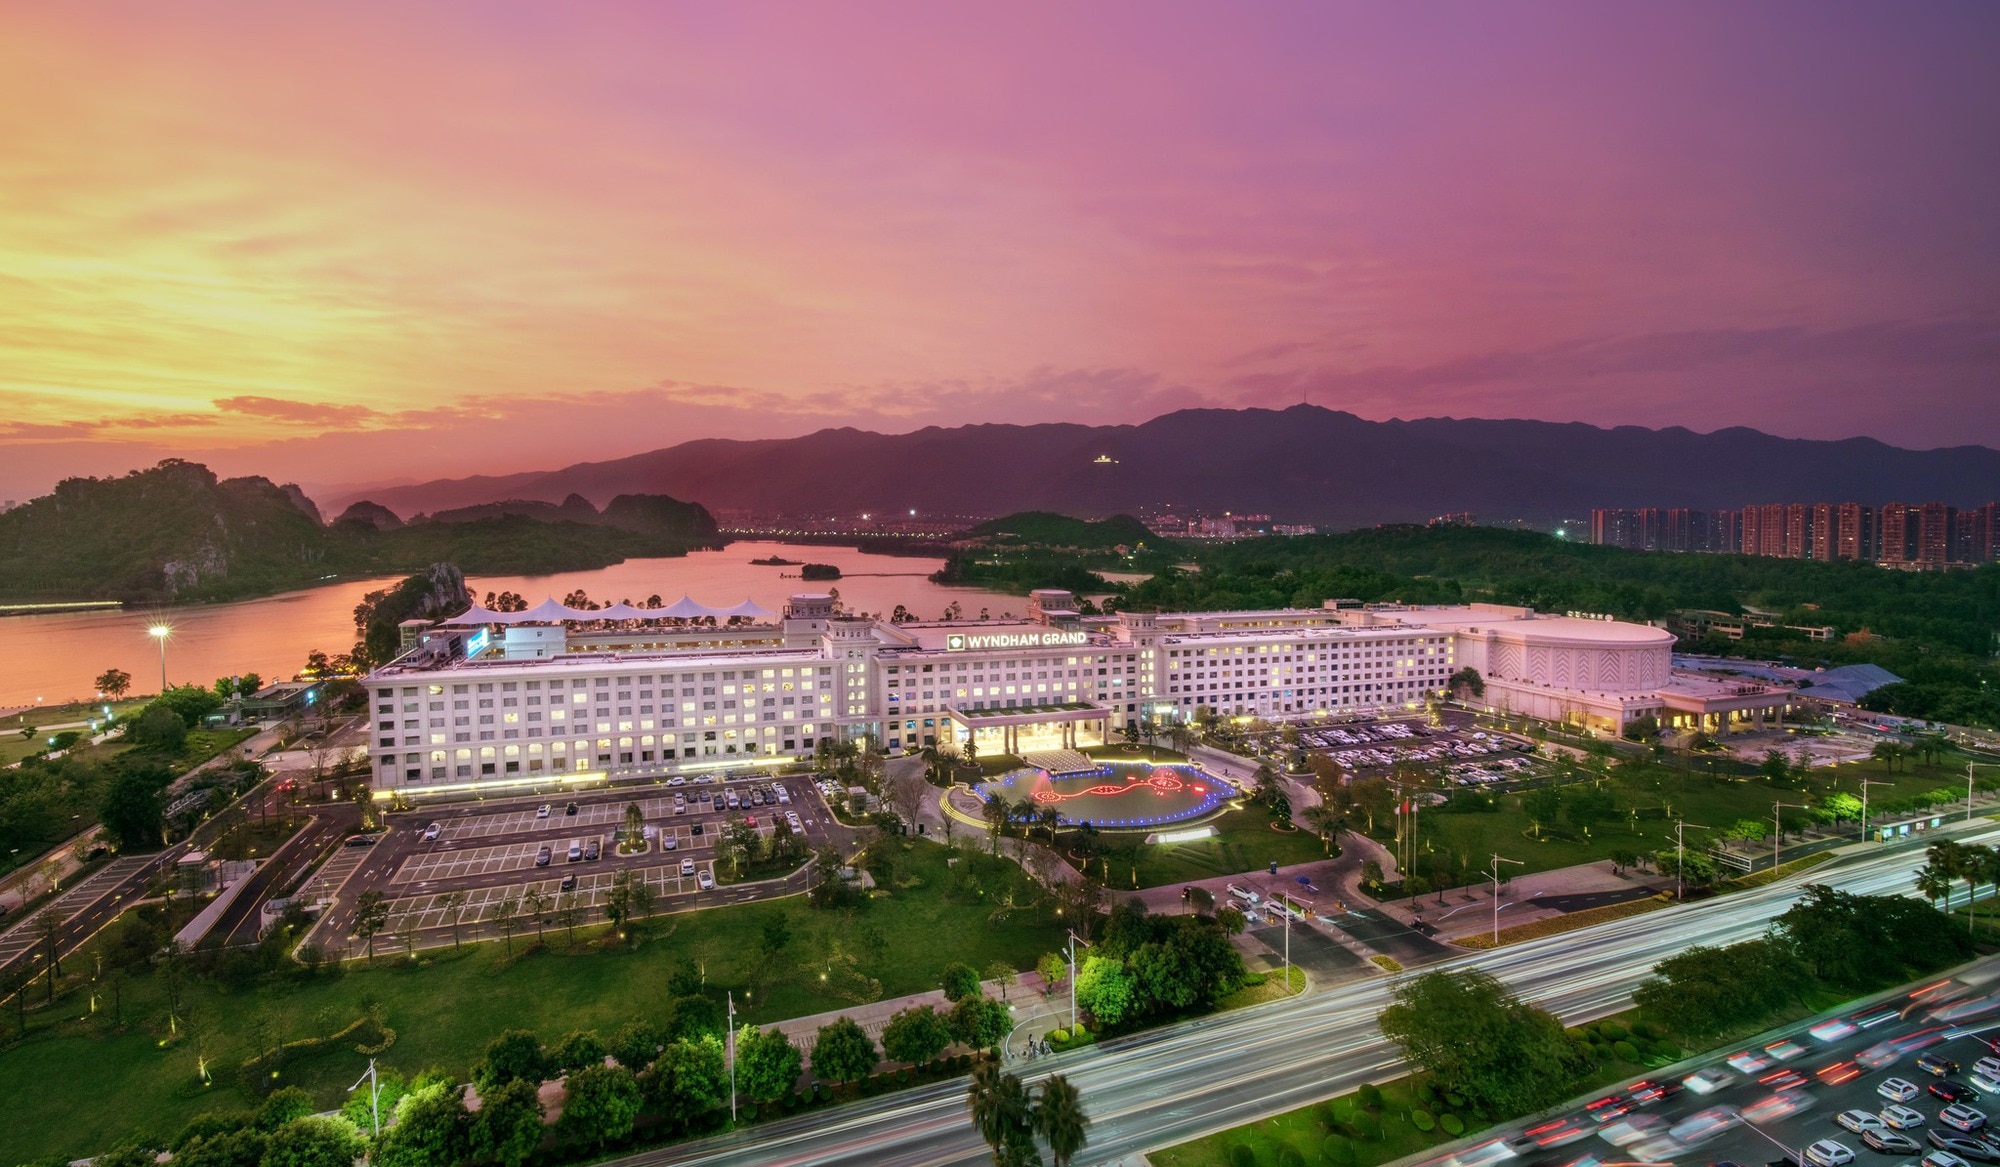 Wyndham mới khai trương hai khách sạn 'view triệu đô' ở Phú Quốc, có gì đặc biệt? - Ảnh 1.